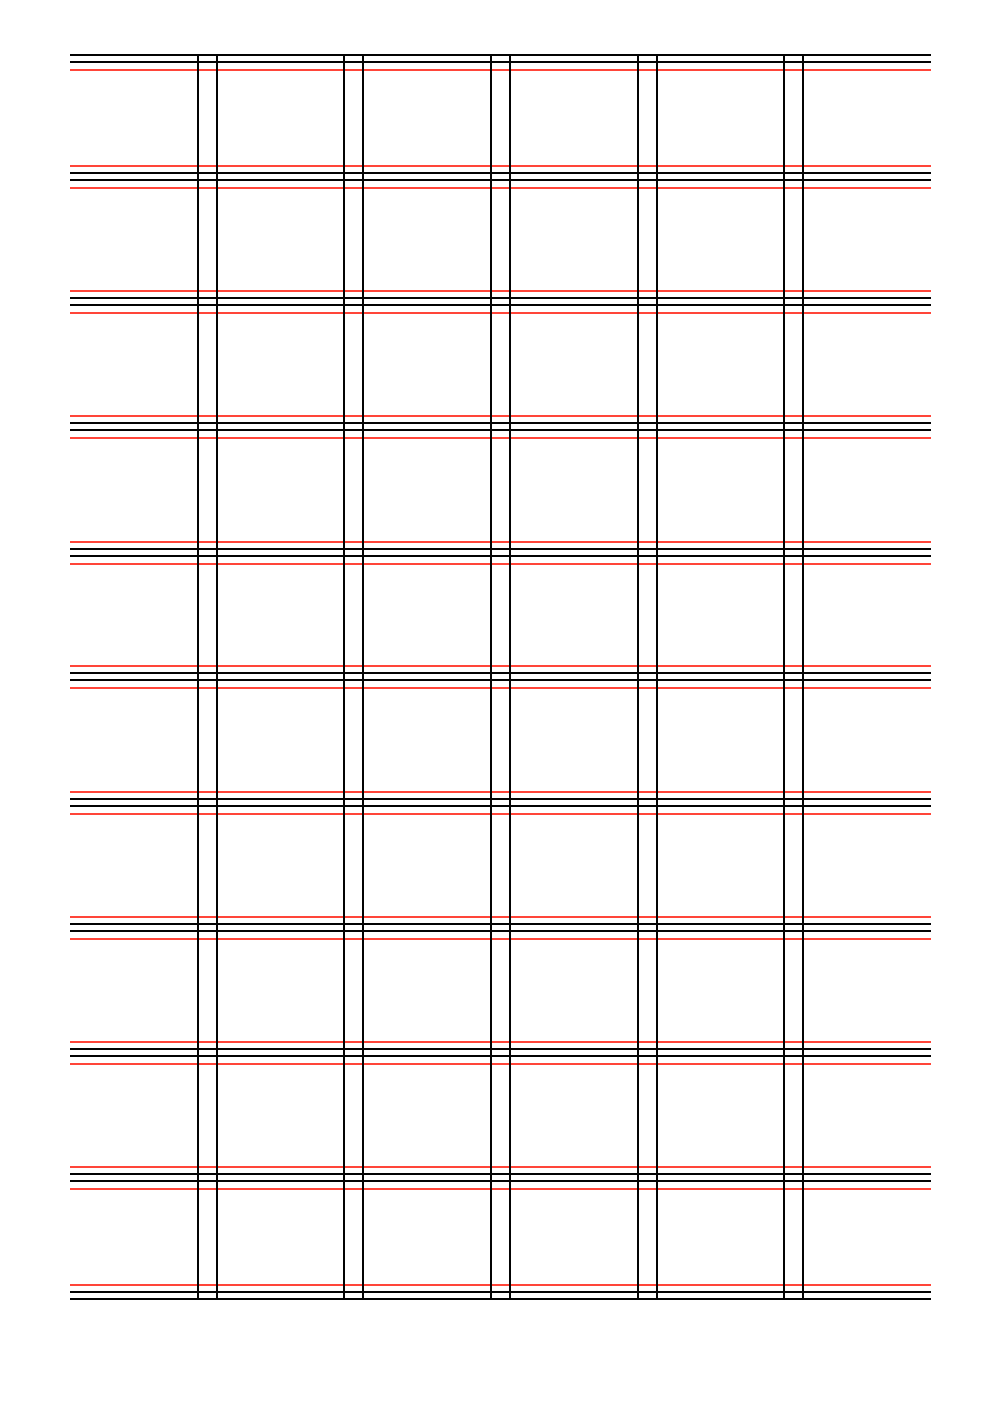 Les gabarits Forma6 sont mise en page avec une grille